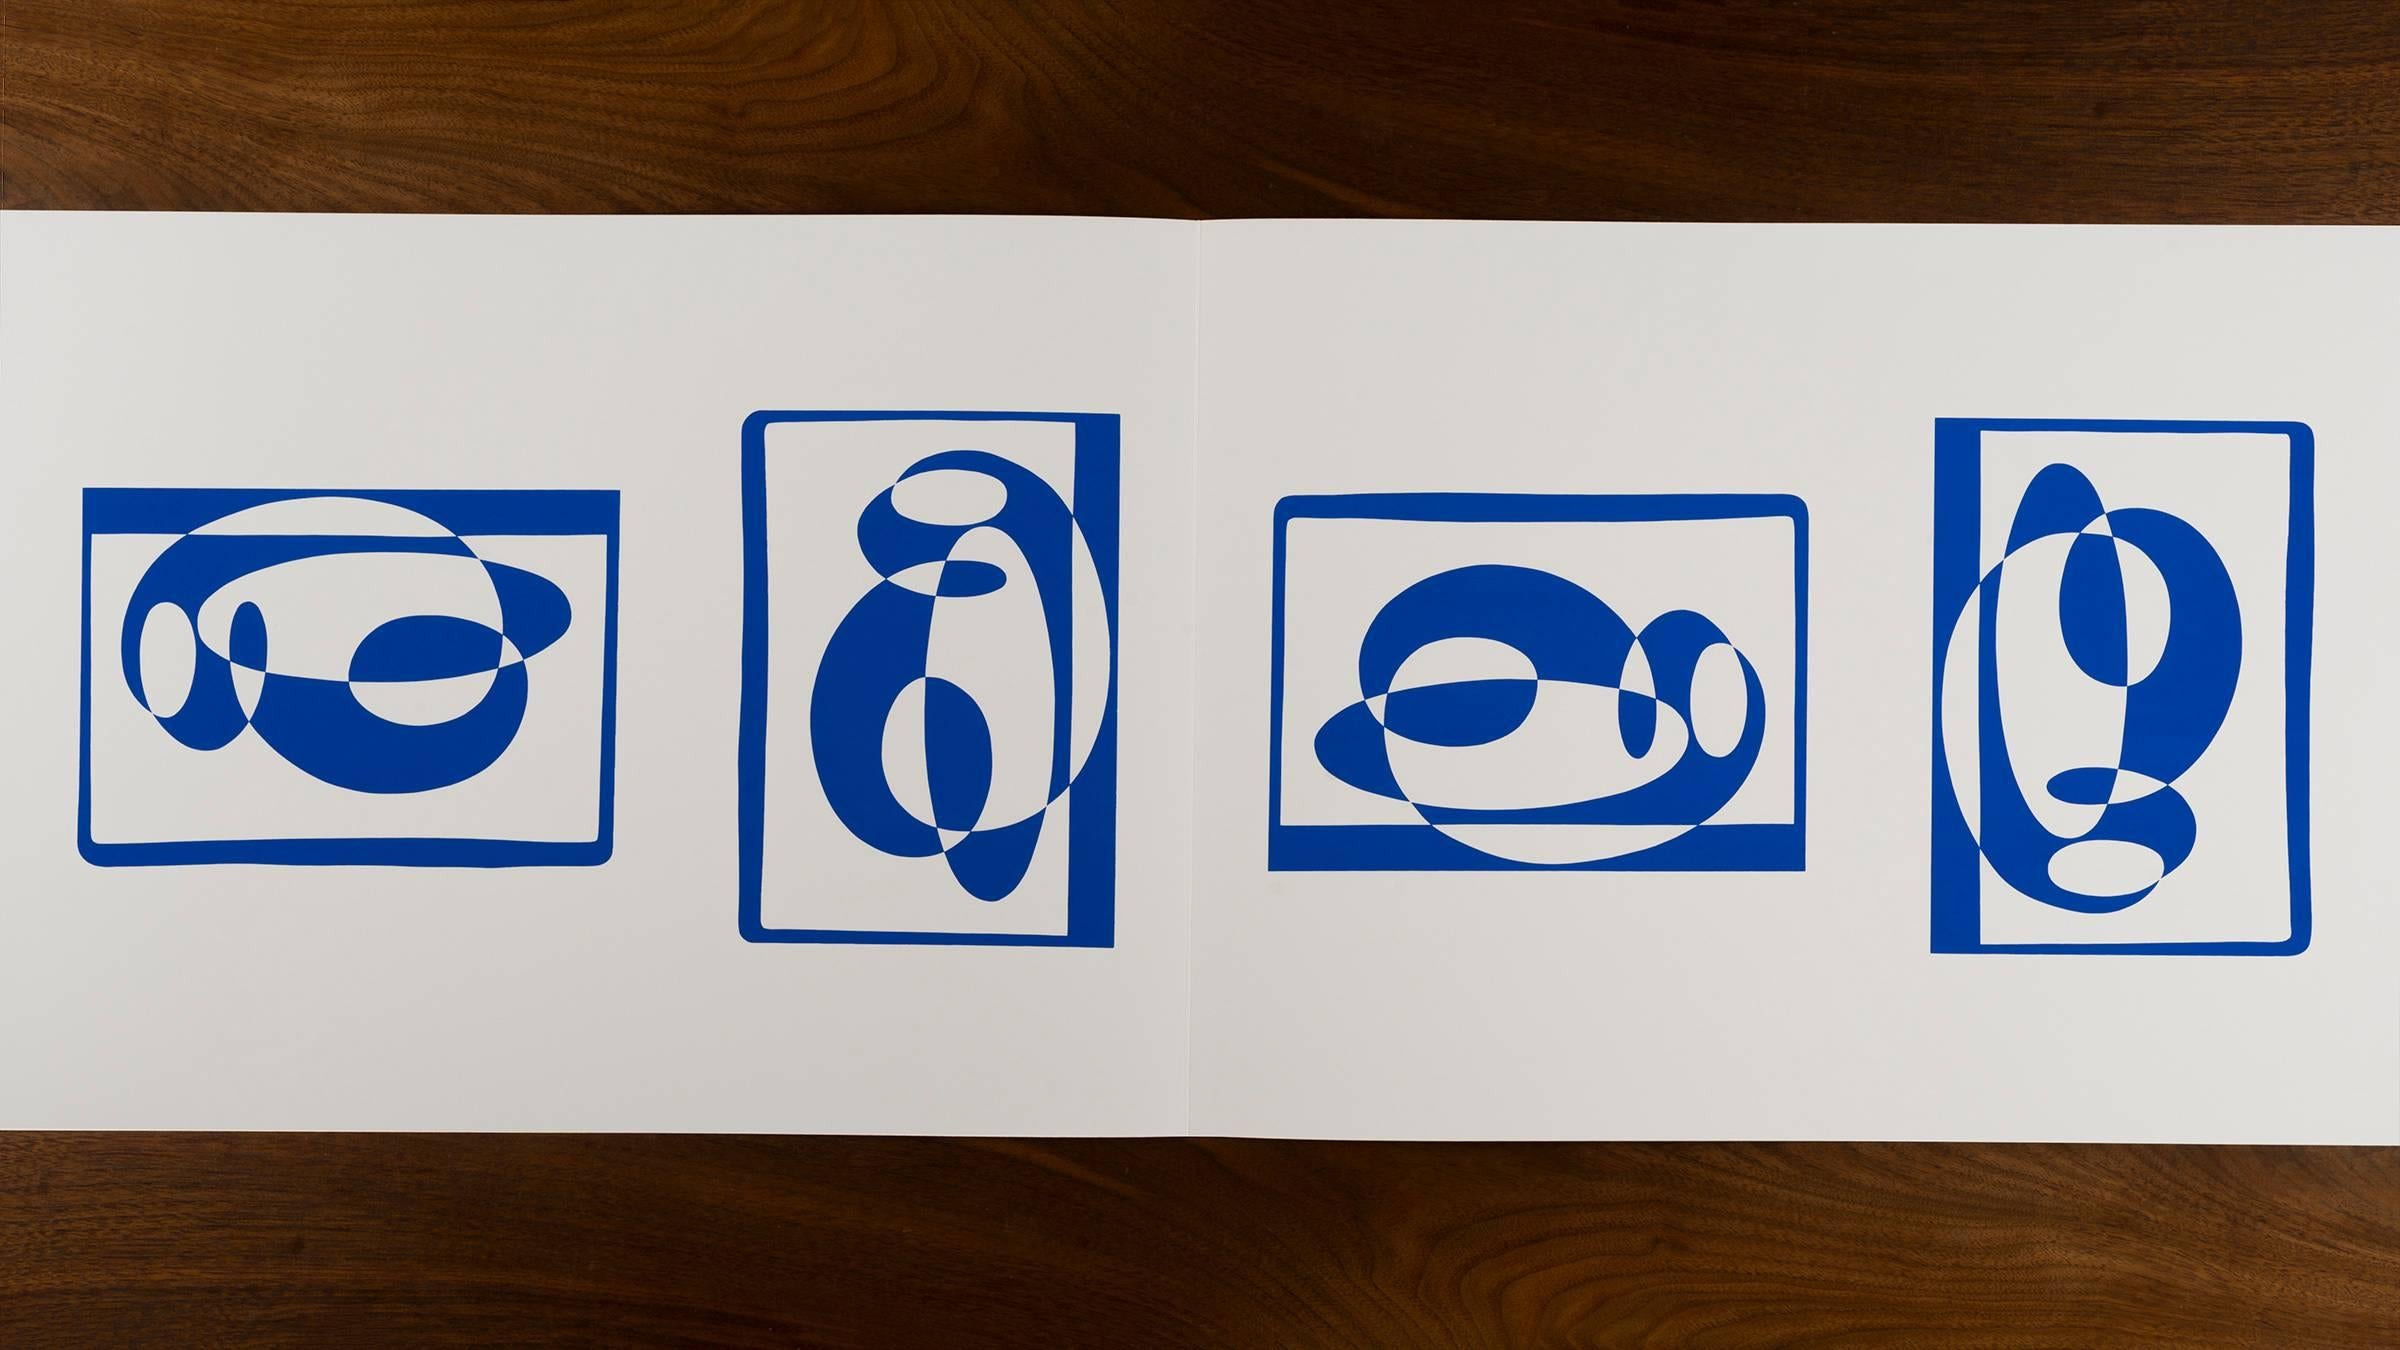 Josef Albers Formulierungen - Artikulationen I & II
Ausgabe 974/ 1000
1972 Siebdruck auf Papier
Geprägt mit den Initialen von Josef Albers, Mappen- und Ordnernummer. Dieses Werk wird von Harry N. Abrams und Ives-Sillman veröffentlicht.
Dieses Werk